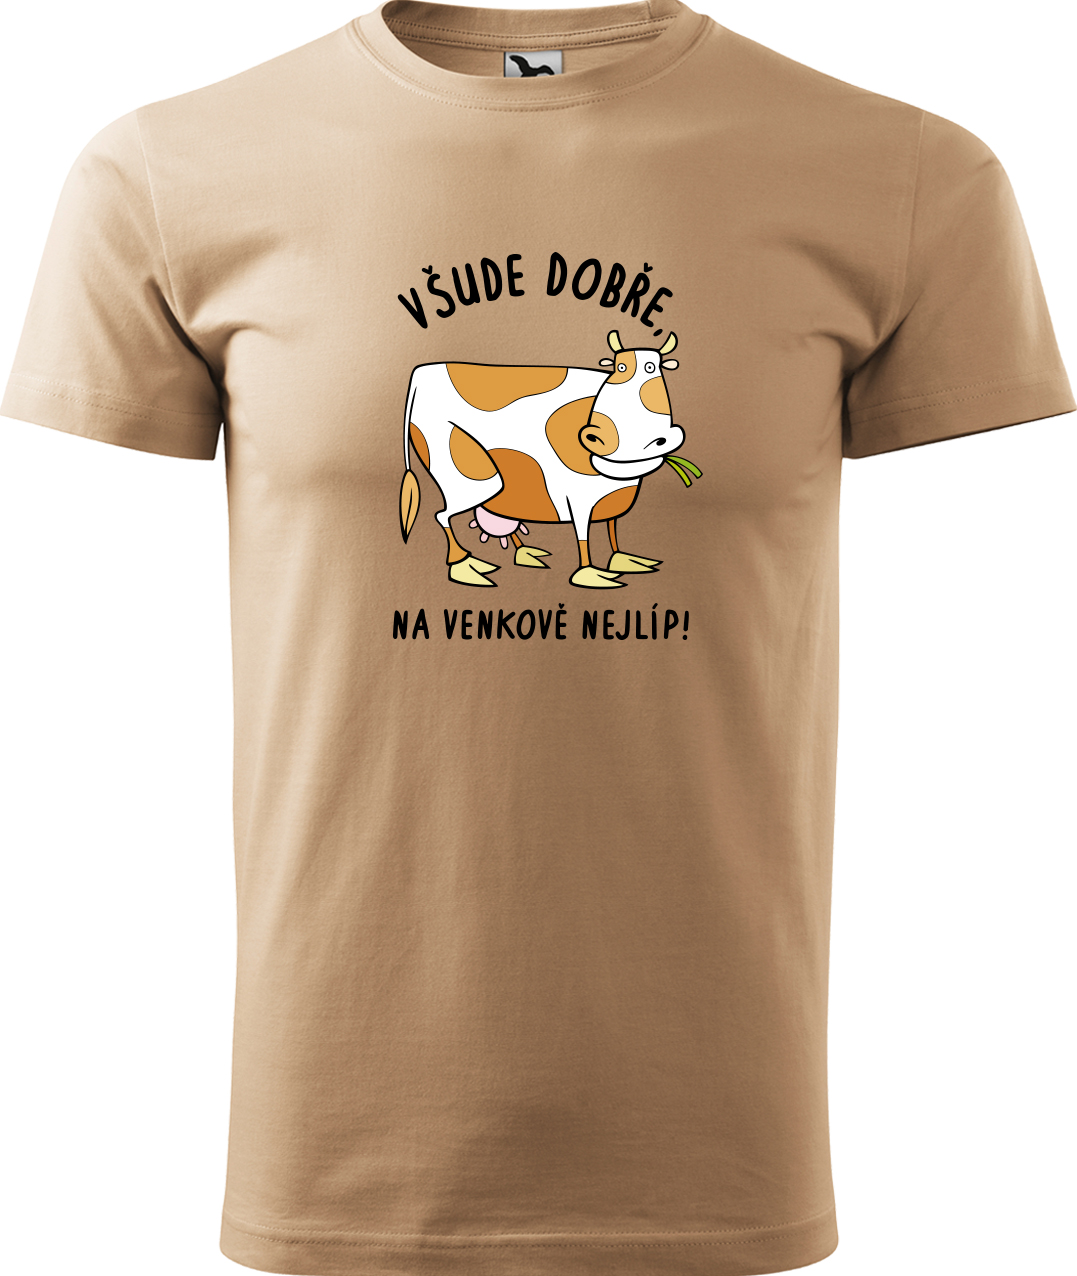 Pánské tričko s krávou - Všude dobře, na venkově nejlíp! Velikost: XL, Barva: Písková (08), Střih: pánský